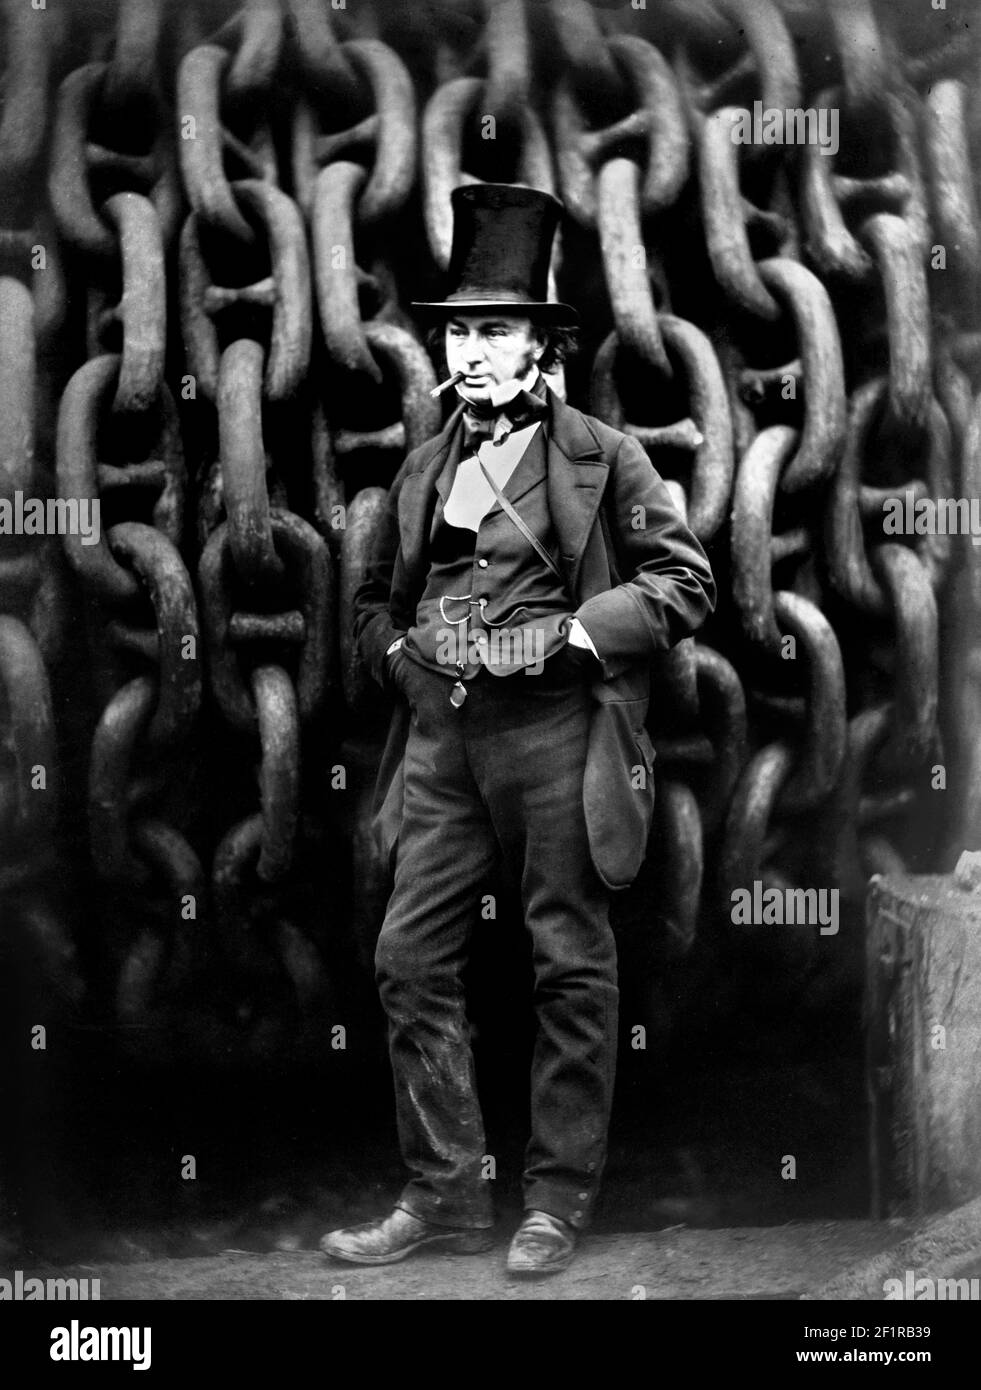 Isambard Königreich Brunel. Porträt mit dem Titel 'Isambard Kingdom Brunel Standing Before the Launching Chains of the Great Eastern' von Robert Howlett, 1857. Brunel (1806-1859) war der berühmteste Bauingenieur des neunzehnten Jahrhunderts. Stockfoto